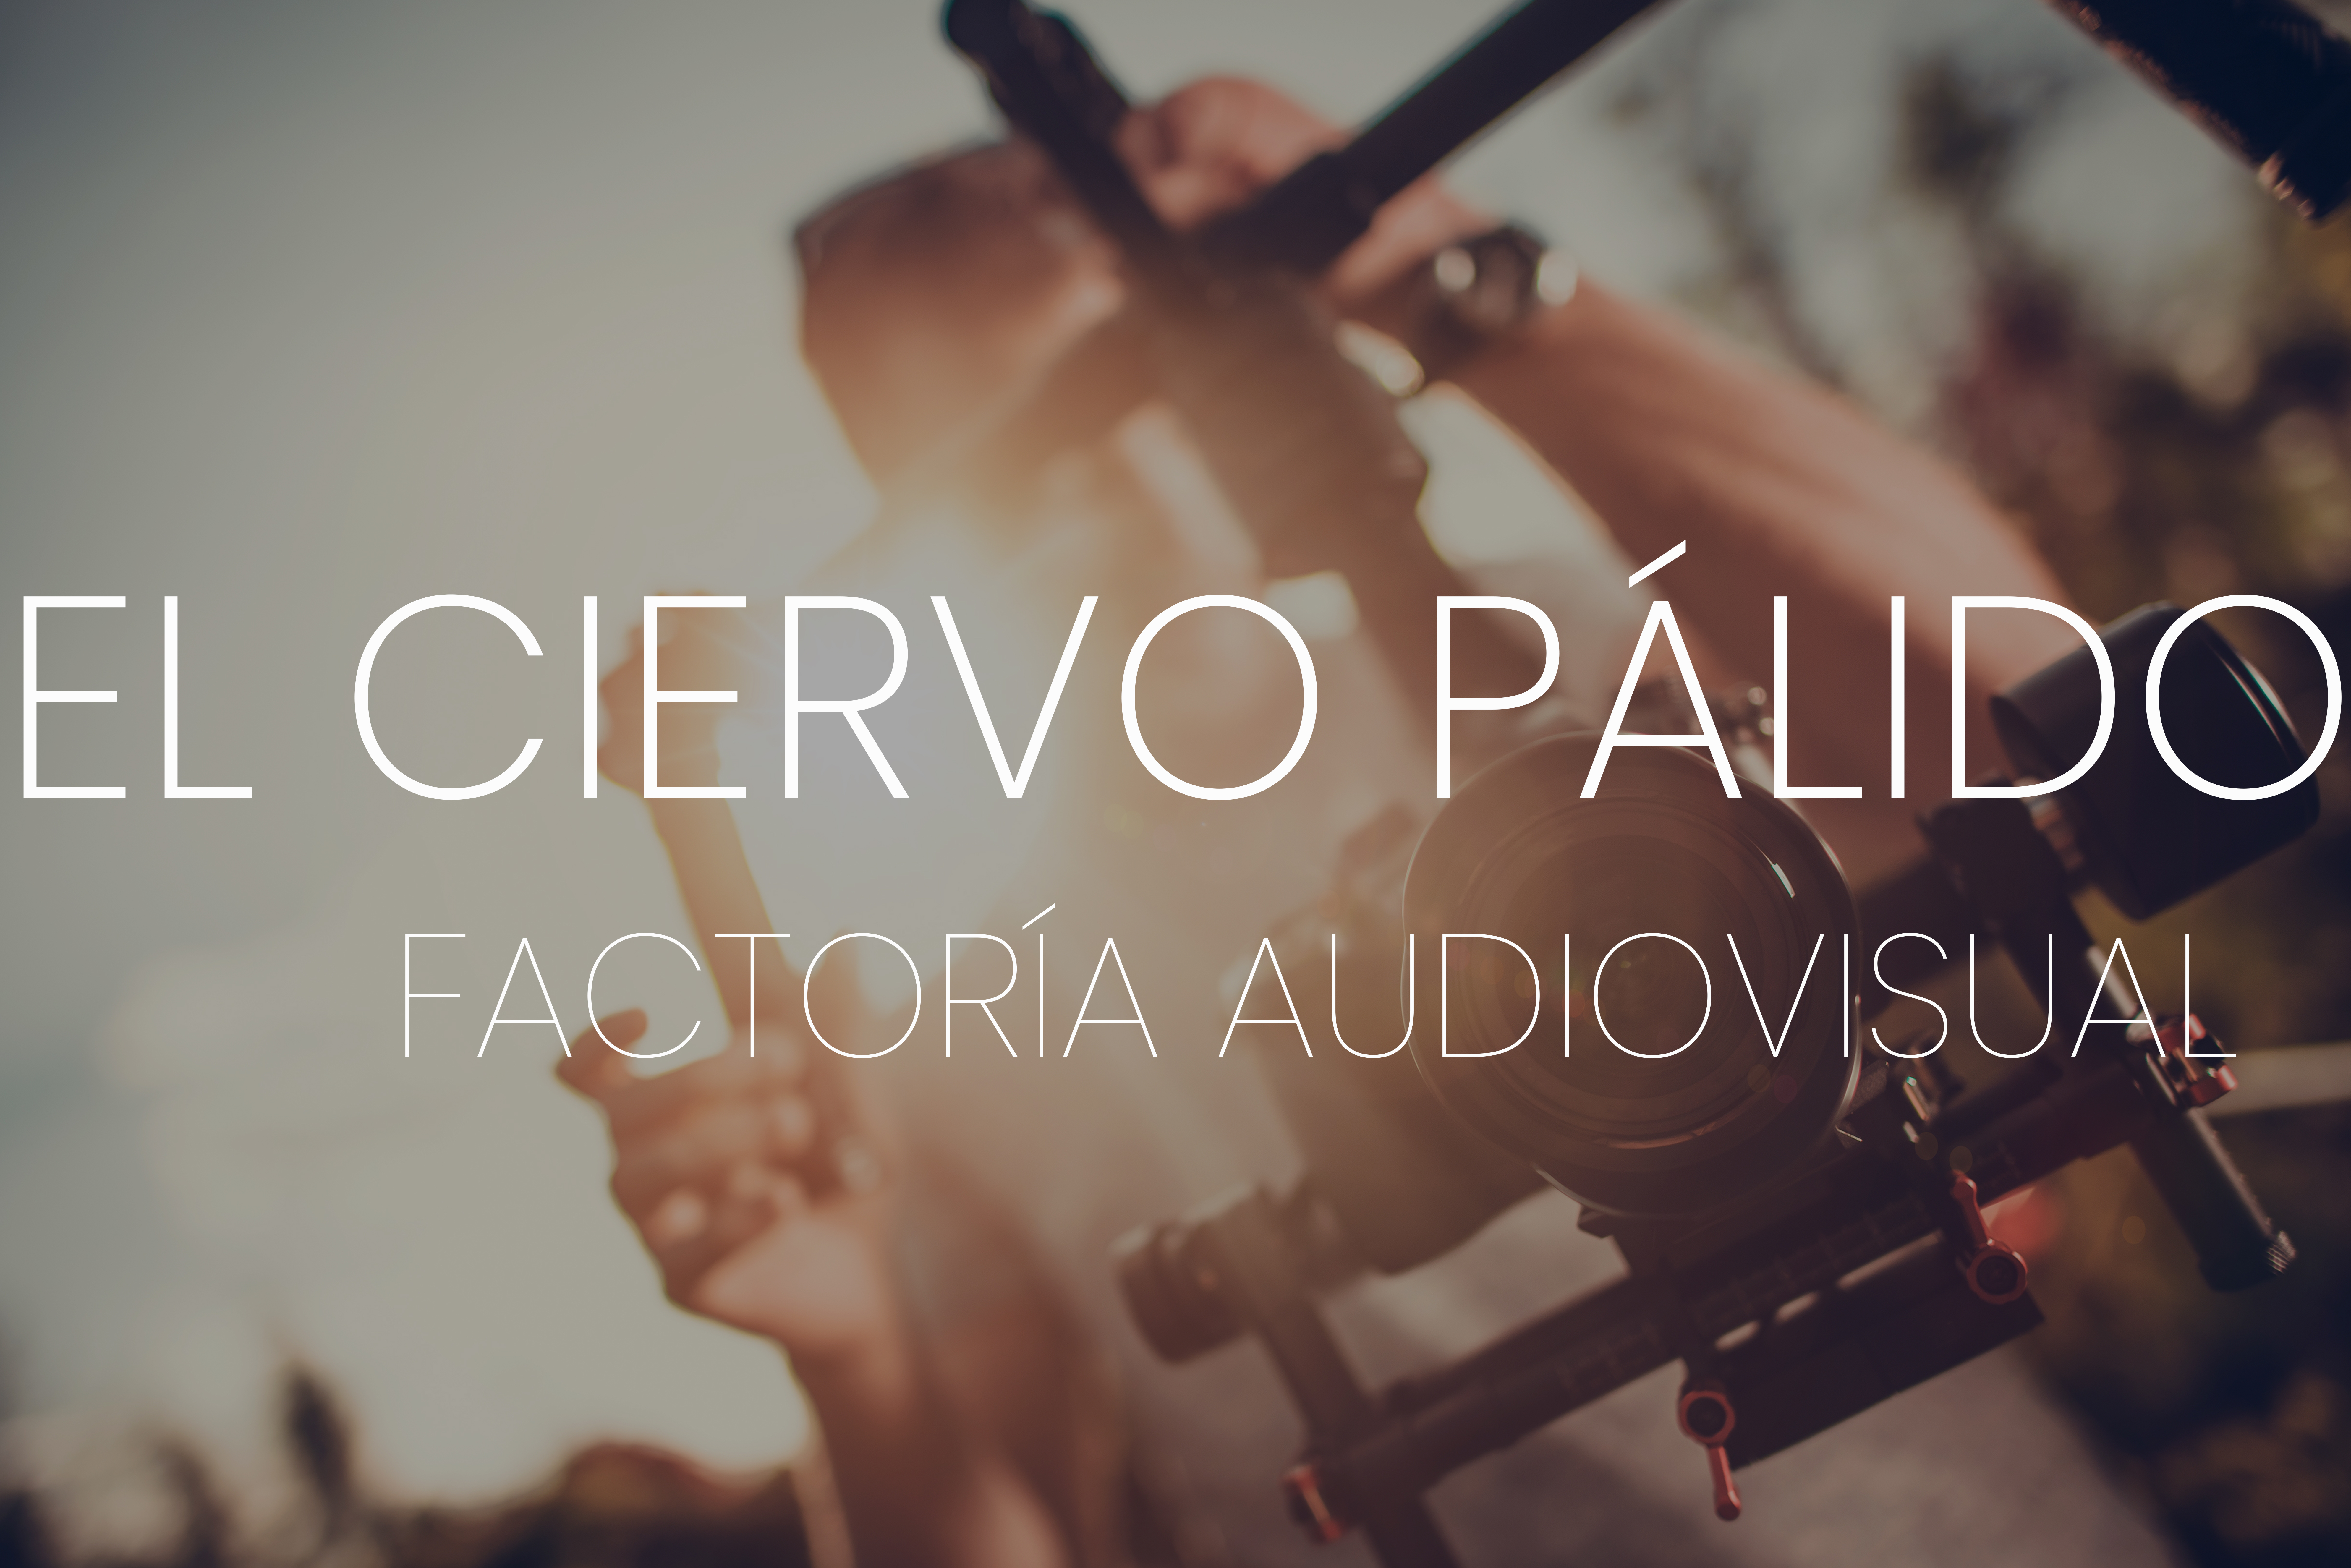 el-ciervo-palido-factoria-audiovisual-negocio-local-utebo-web-online